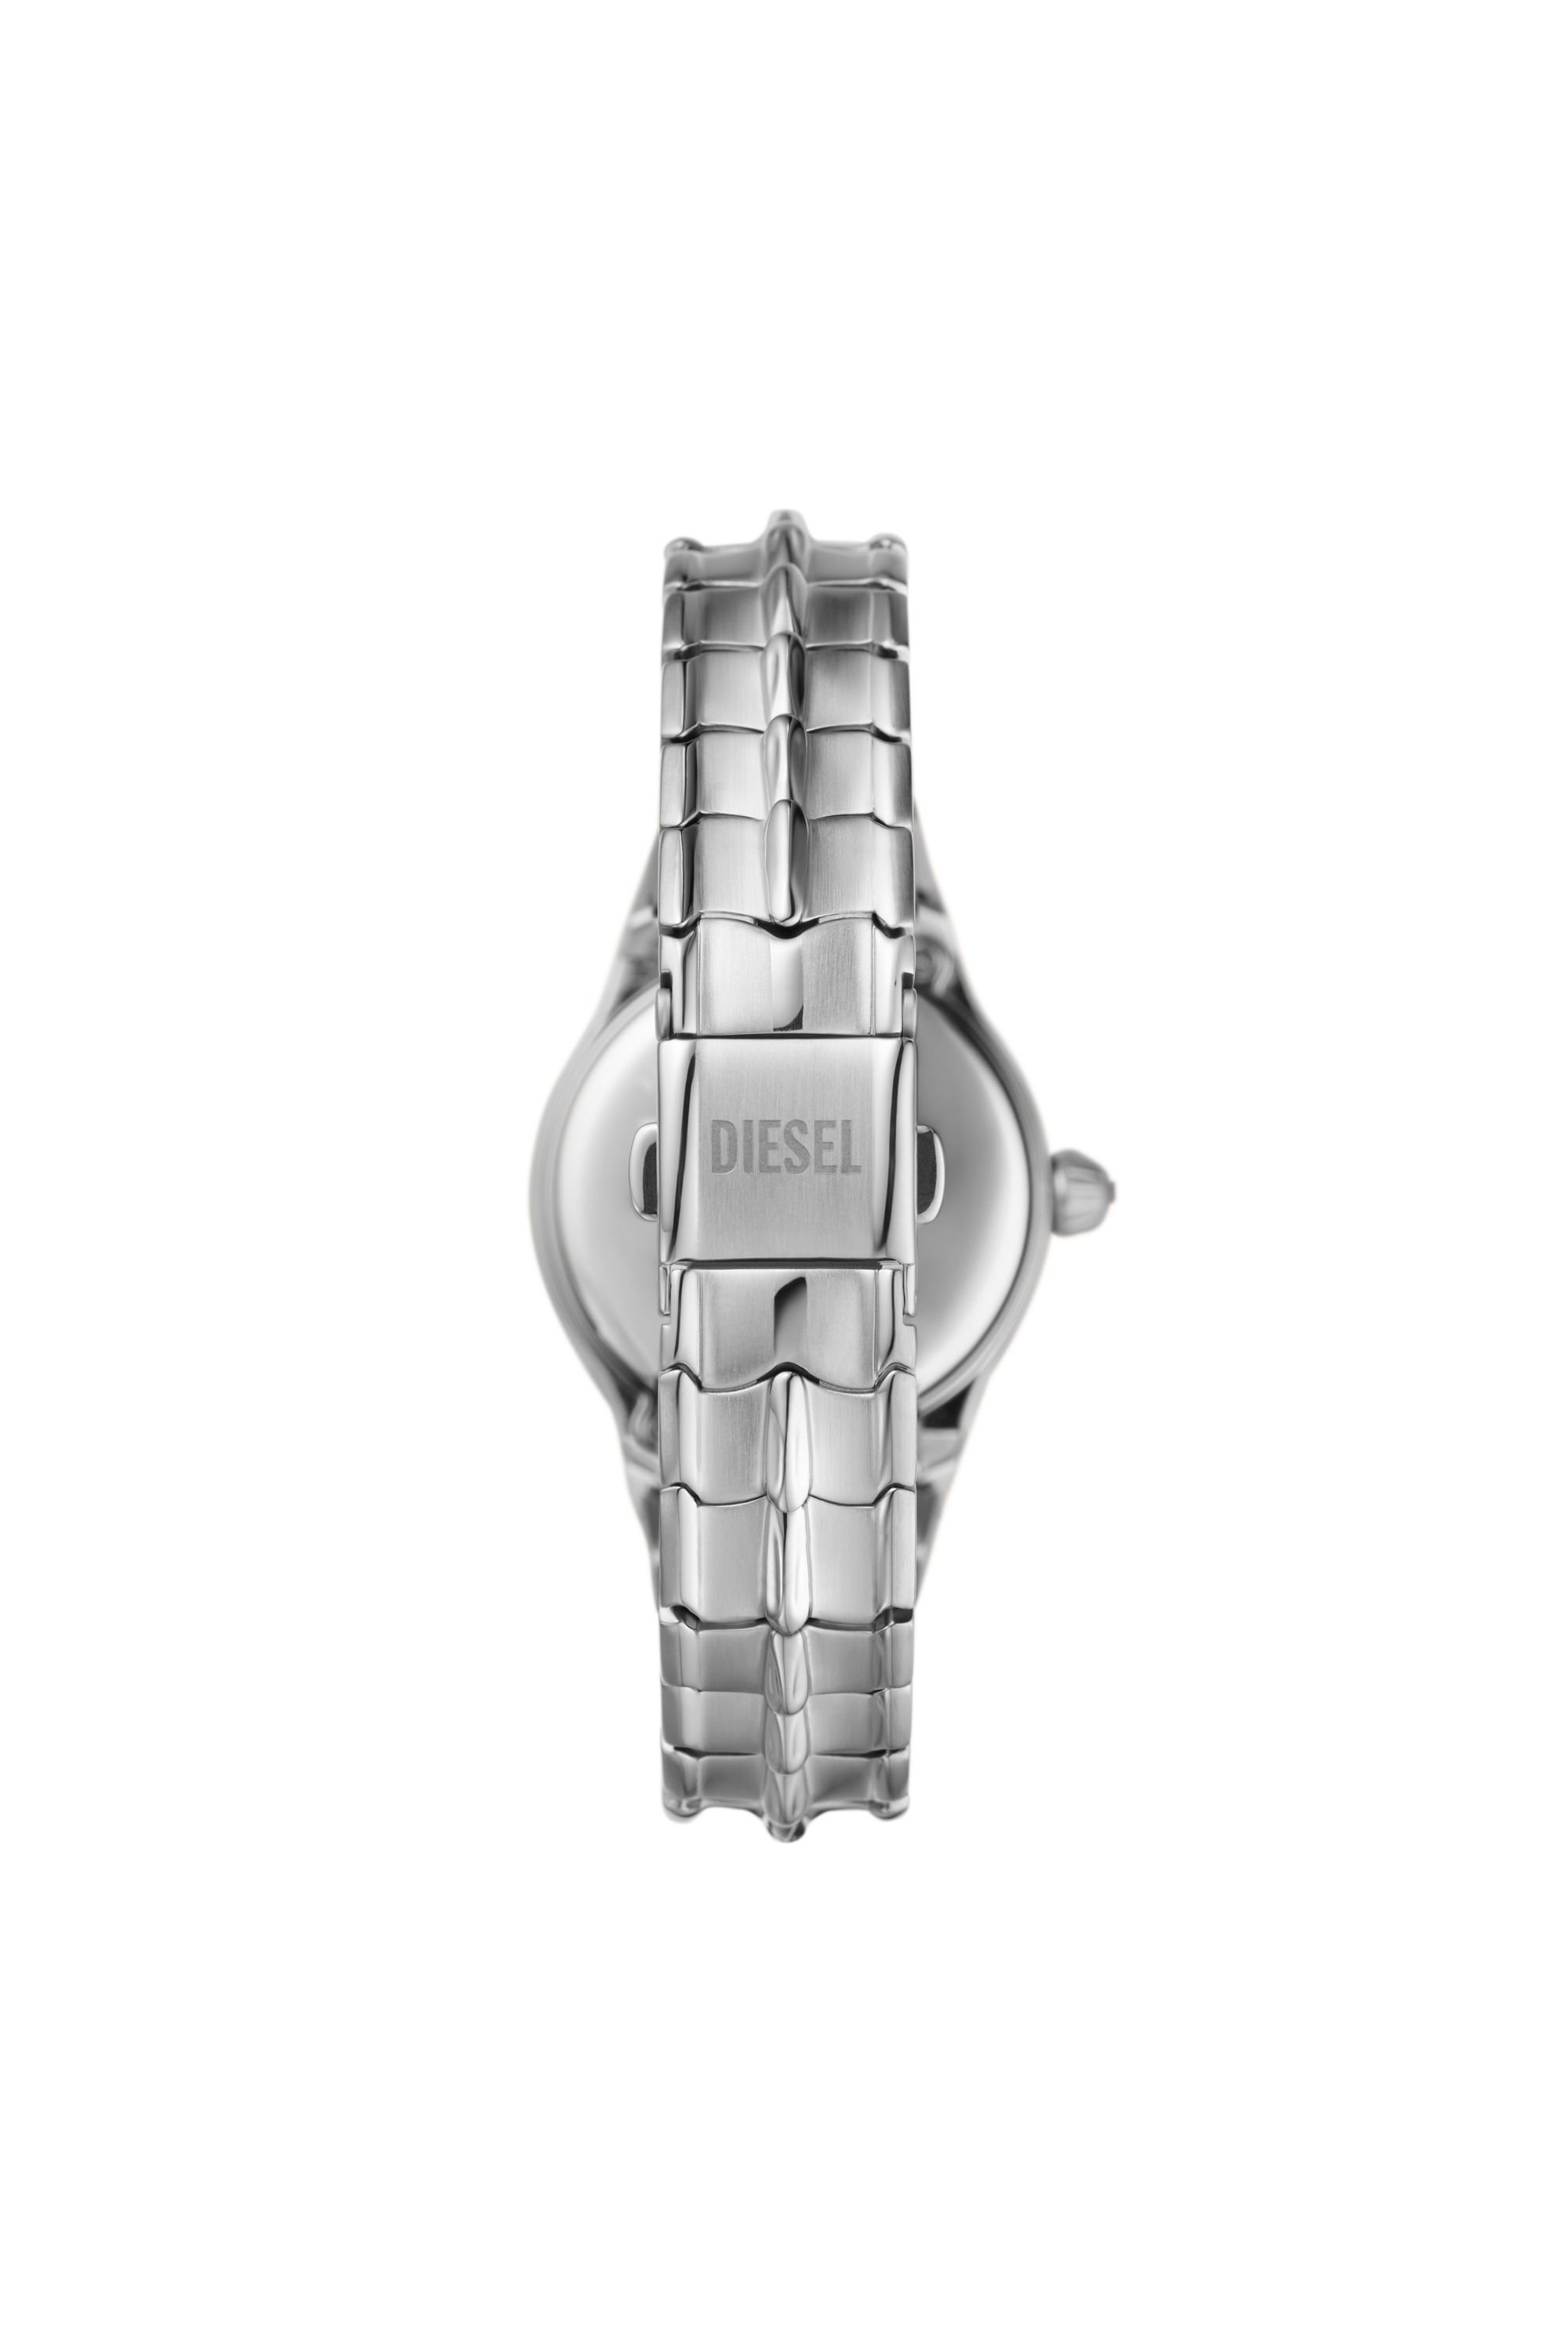 Diesel - DZ5605, Damen Vert Armbanduhr aus Edelstahl mit drei Zeigern in Silber - Image 2